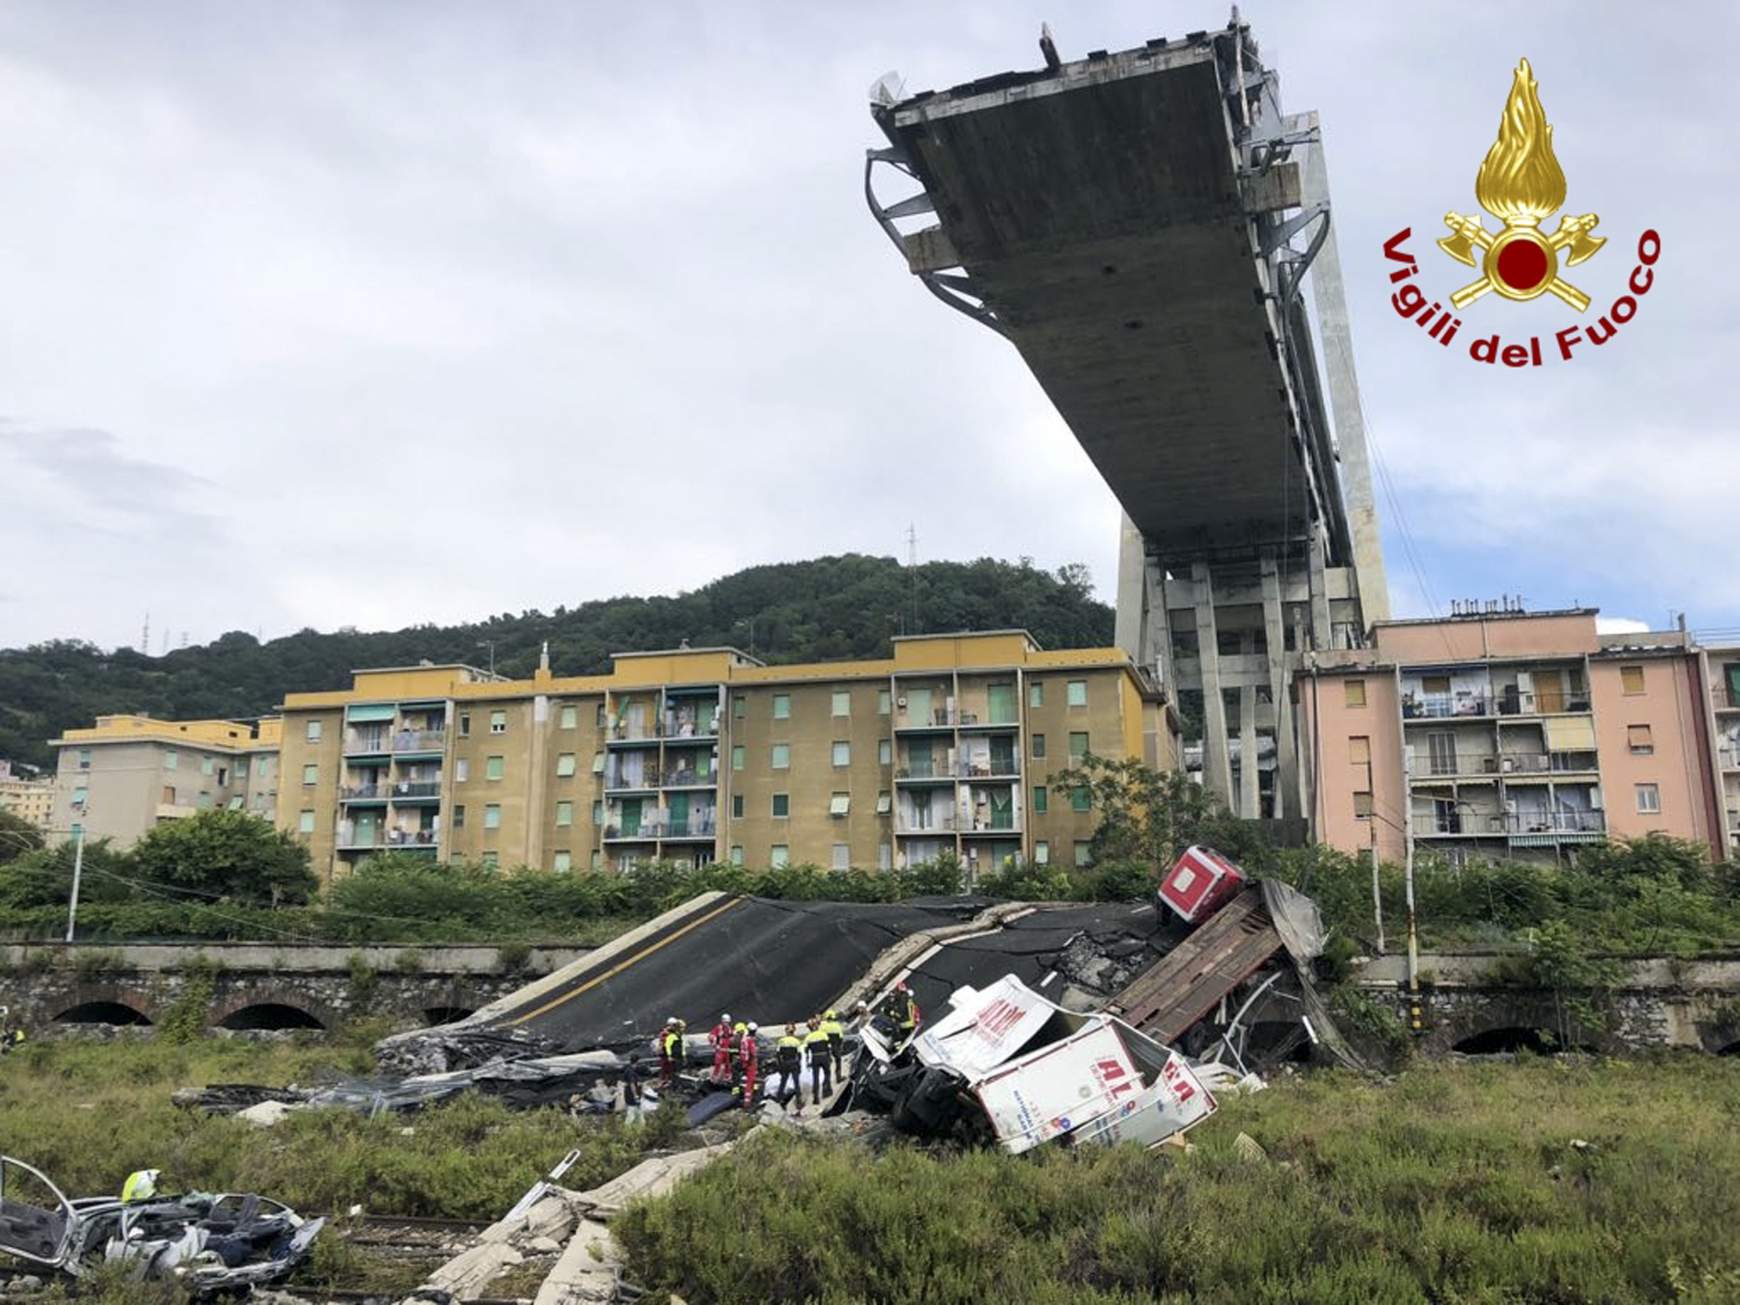 Genovai hídszerencsétlenség